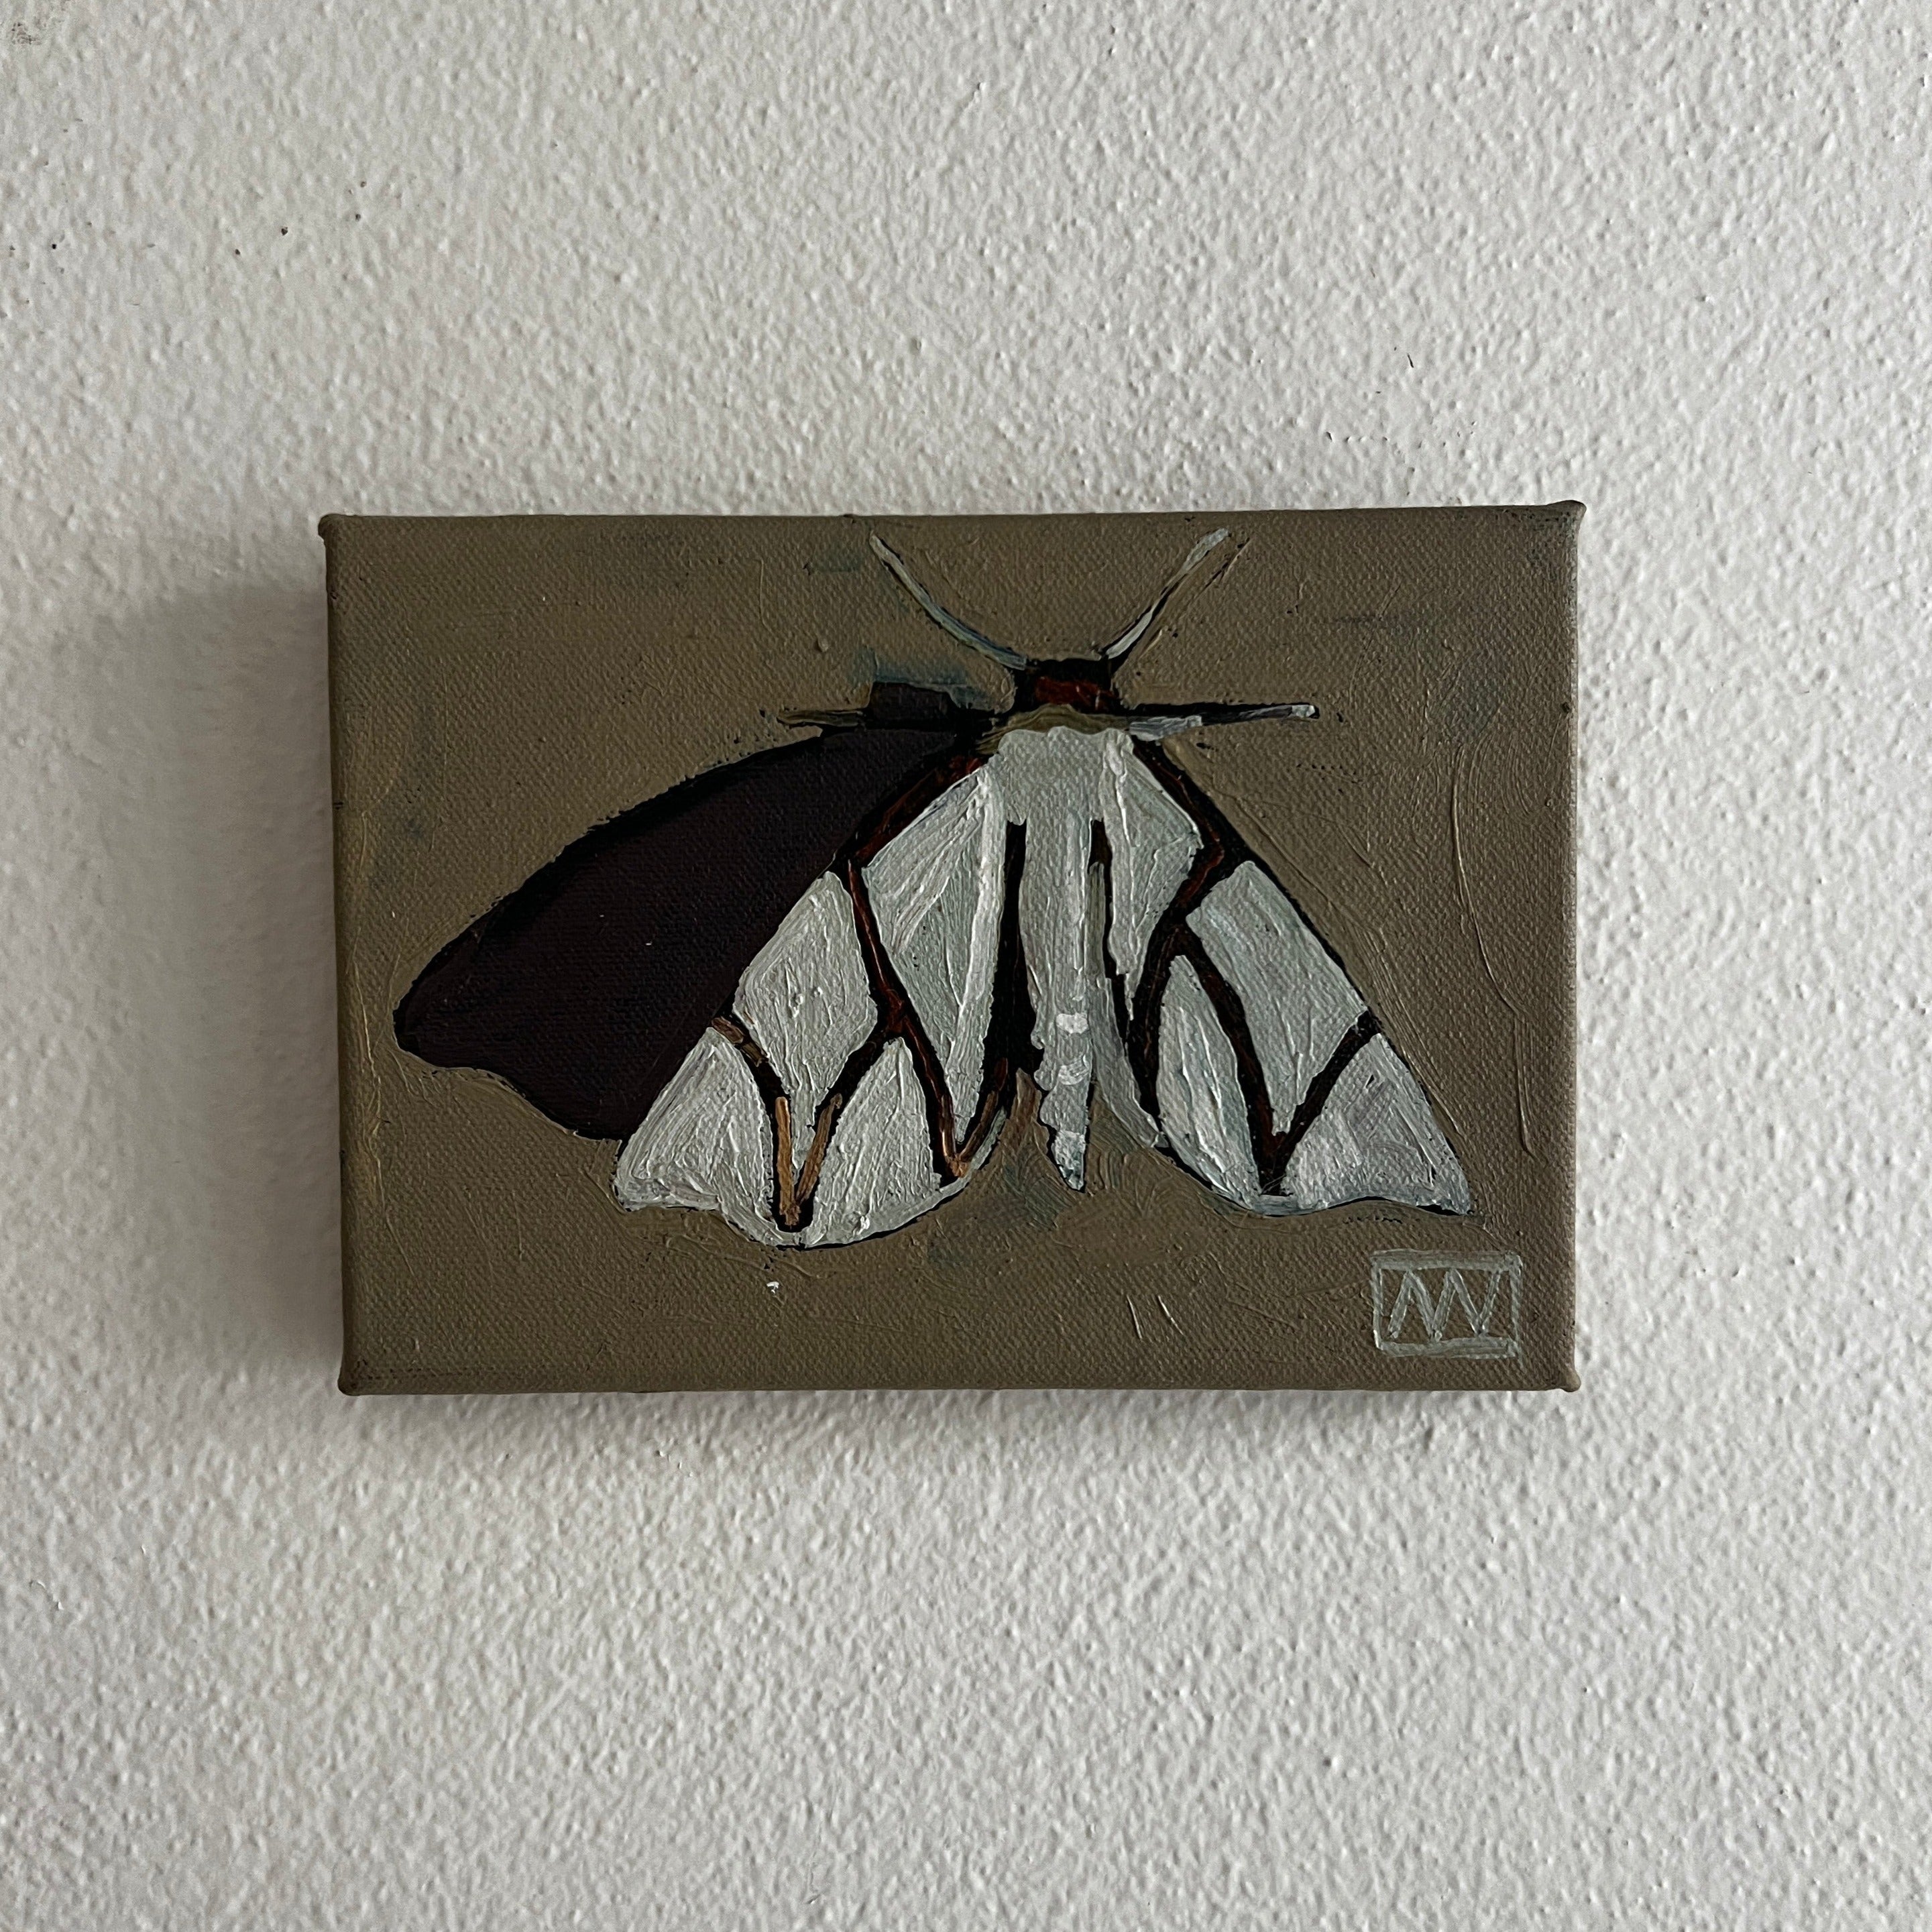 WW Moth by Andrea Wilson